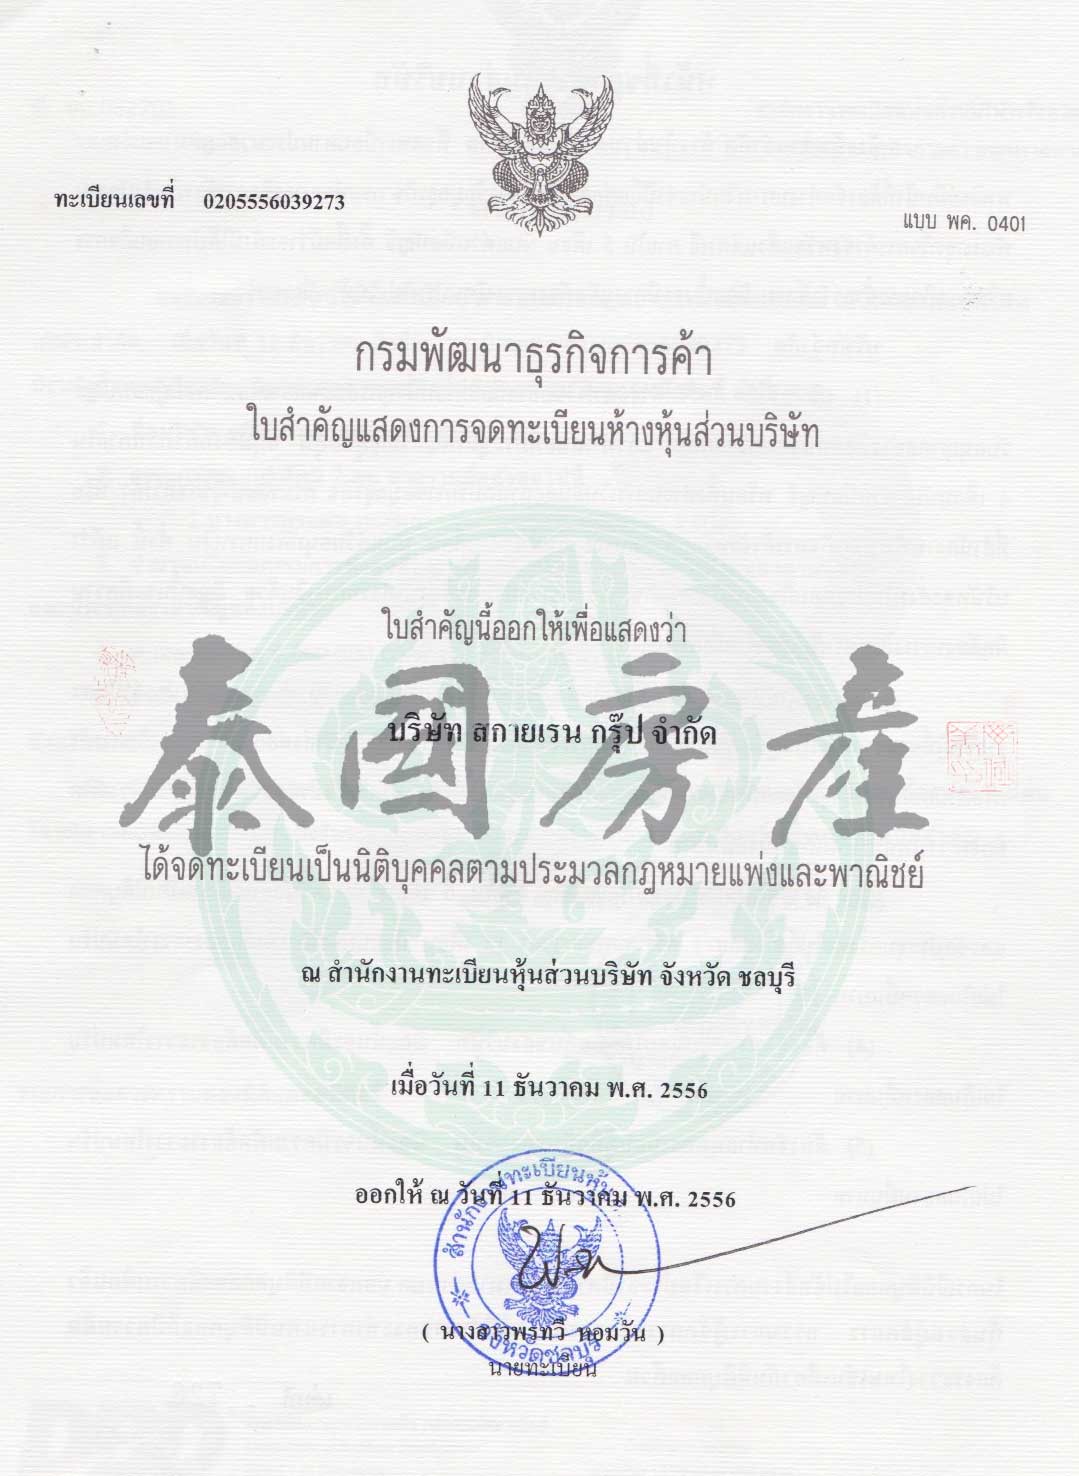 泰国房产网 营业执照